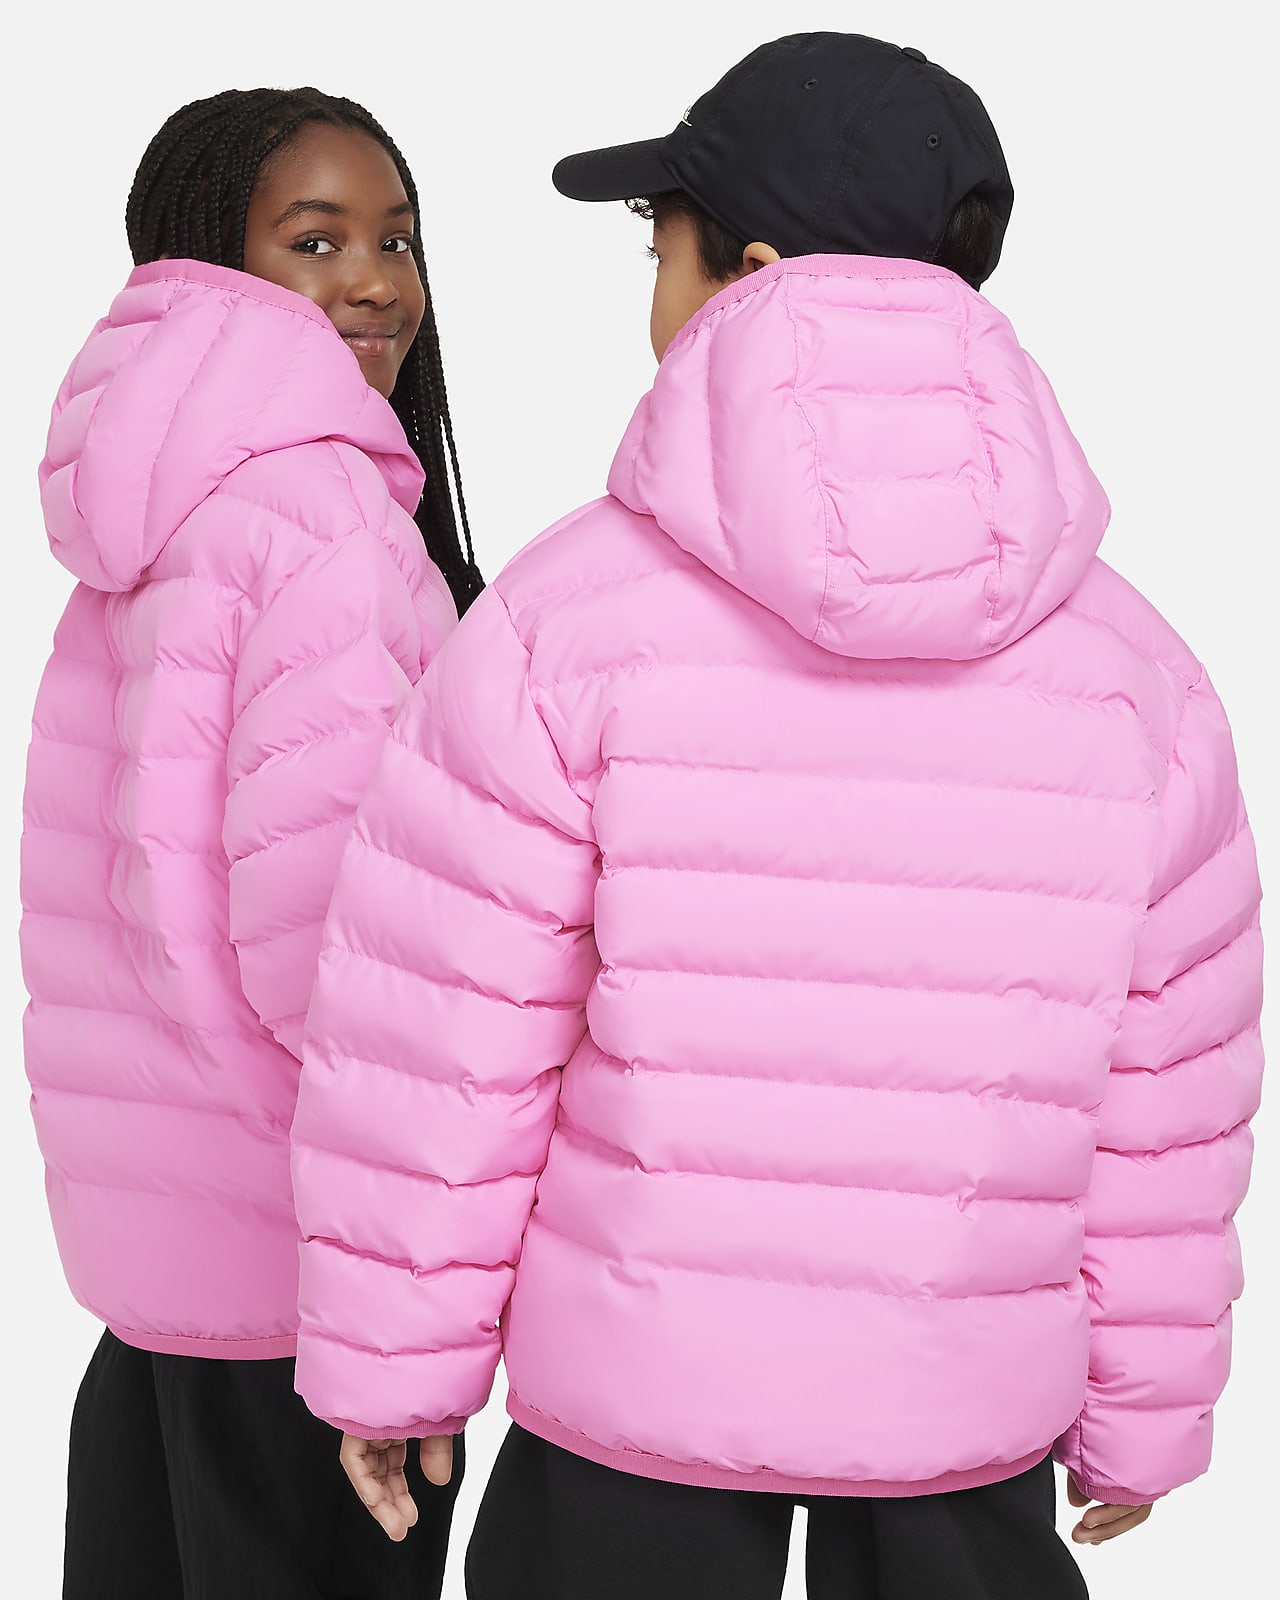 Big Loose Hooded Nike Fill Kids\' Lightweight Sportswear Jacket. Synthetic